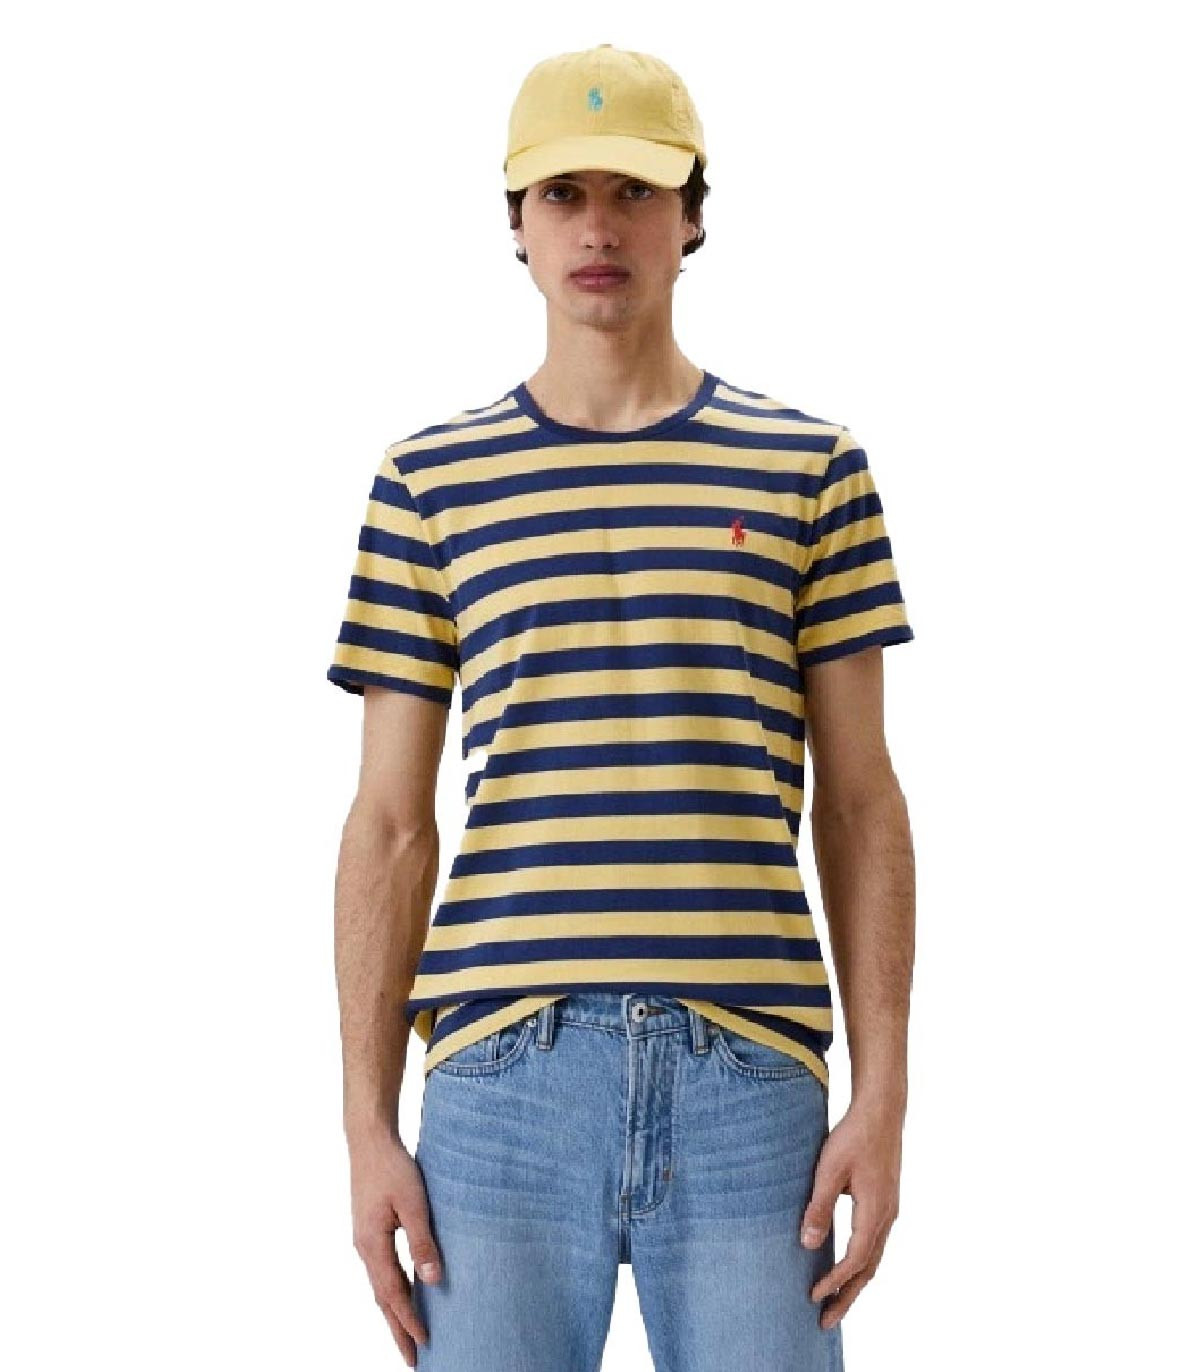 Polo Ralph Lauren - Camiseta de Rayas - Amarillo